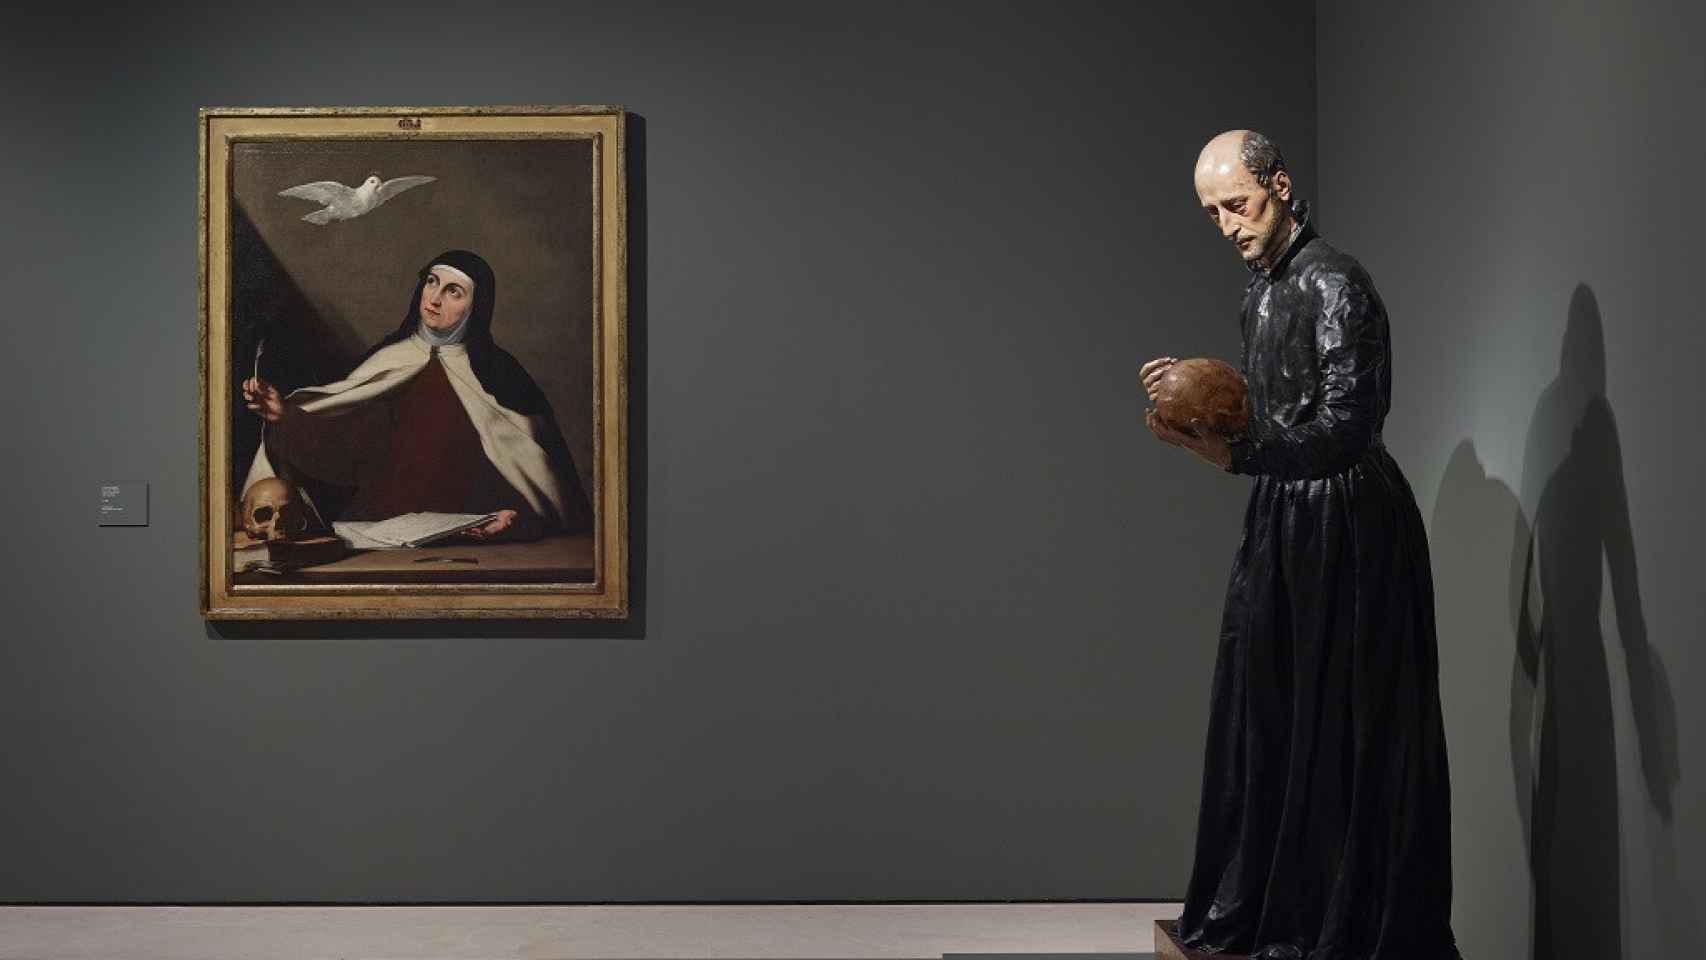 El lienzo de santa Teresa de Jesús, de José de Ribera, y la escultura de san Francisco de Borja, de Montañés, comparten una de las salas.